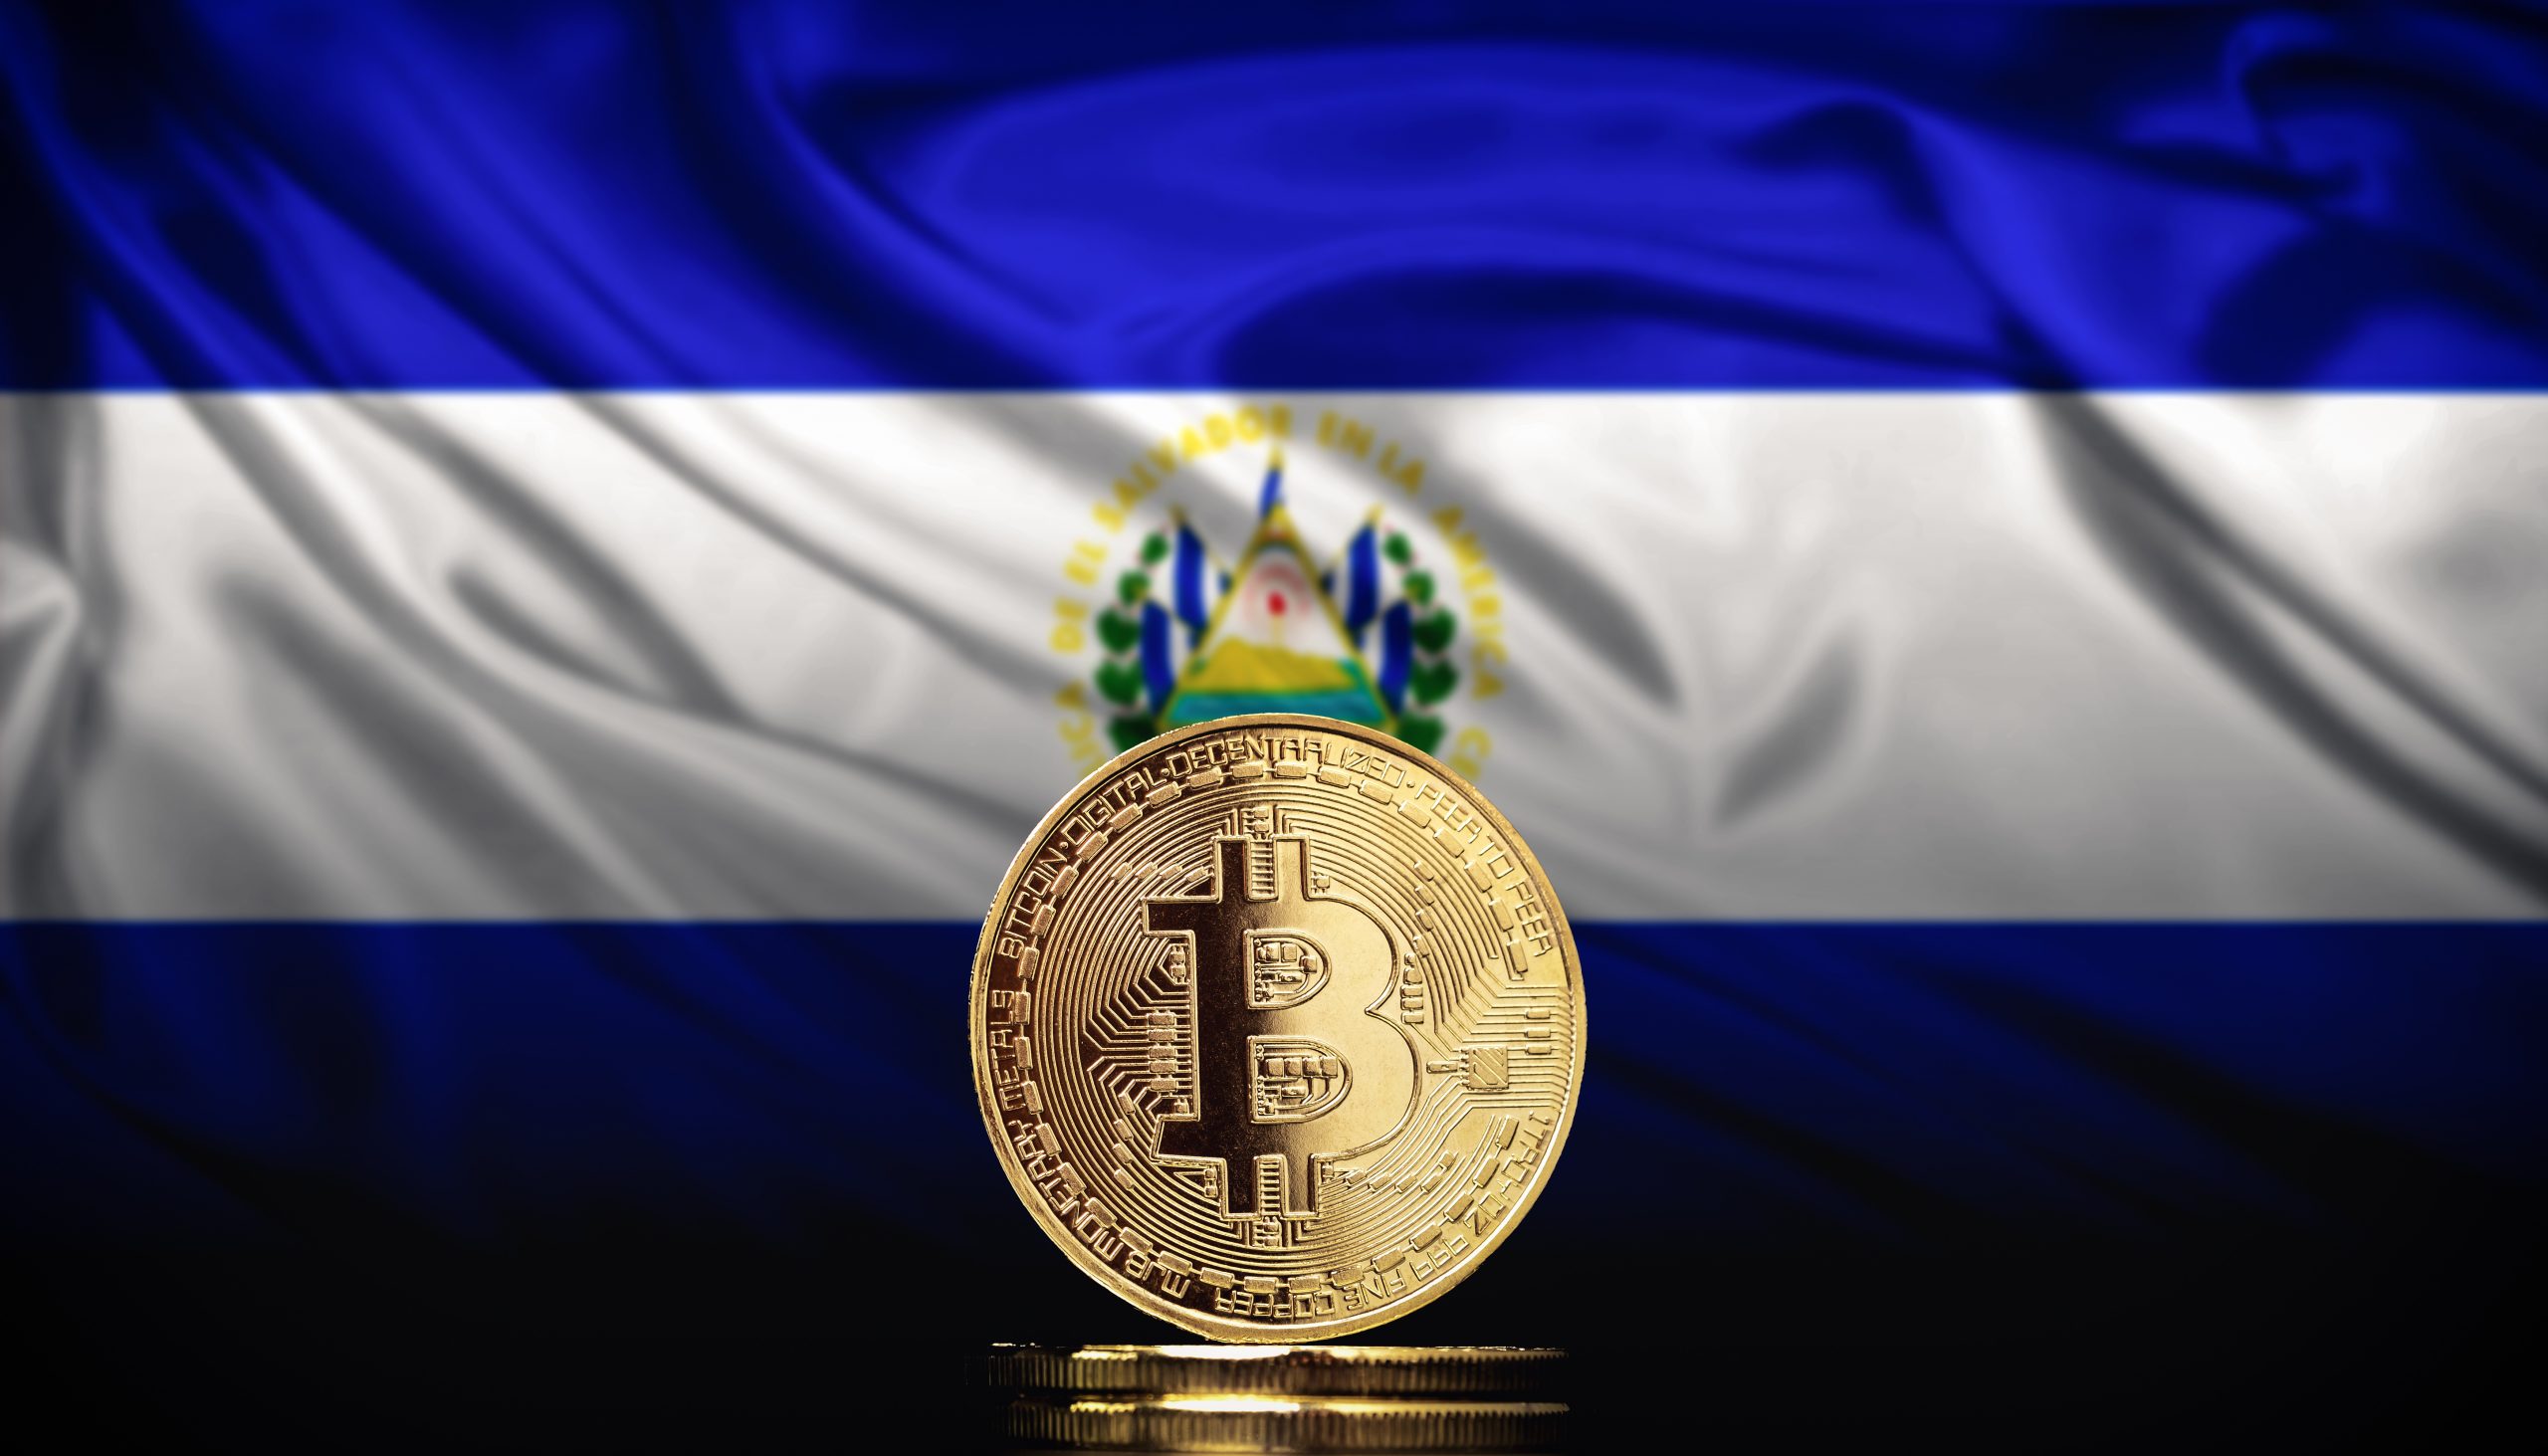 El Salvador crypto currency - Buying Bitcoin dip